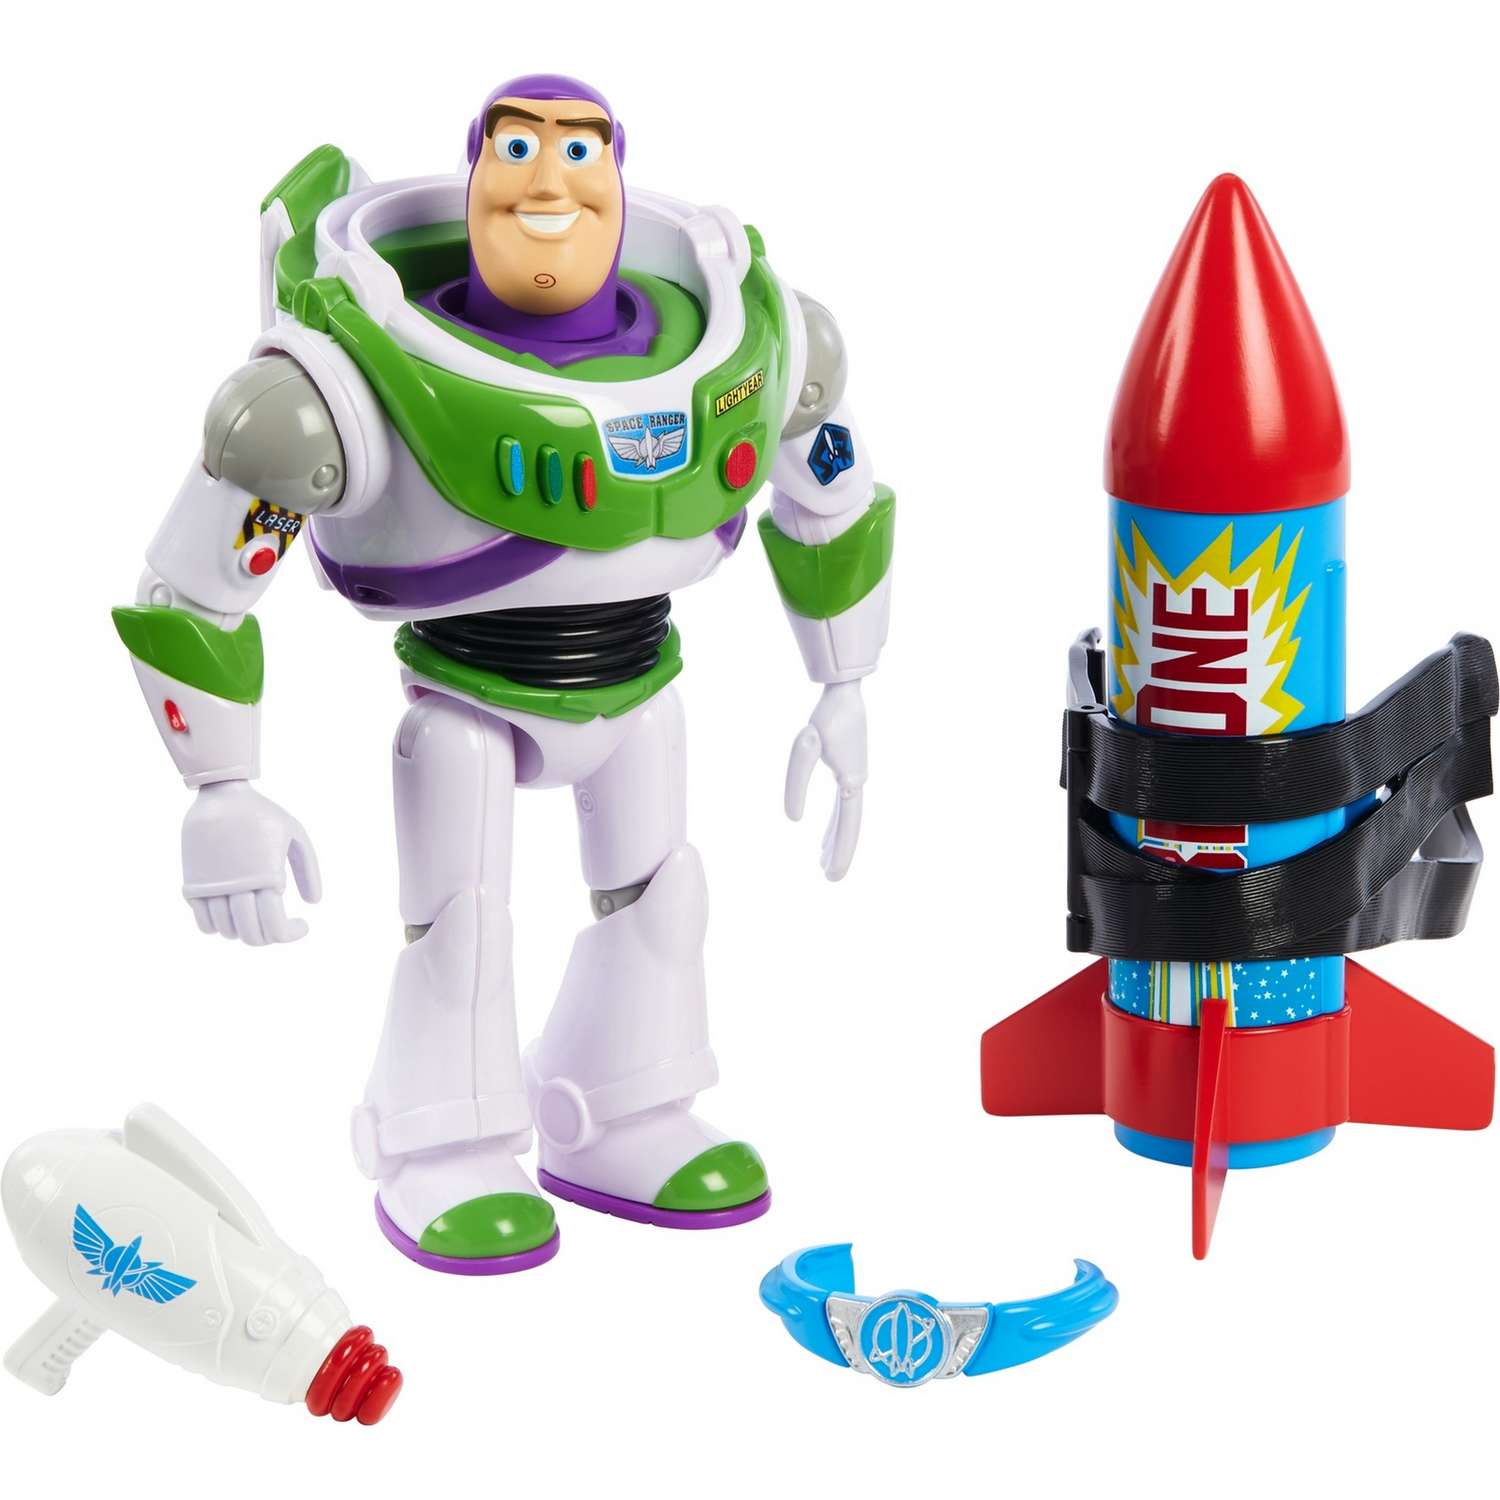 Фигурка Toy Story Базз Лайтер с аксессуарами GJH49 - фото 1